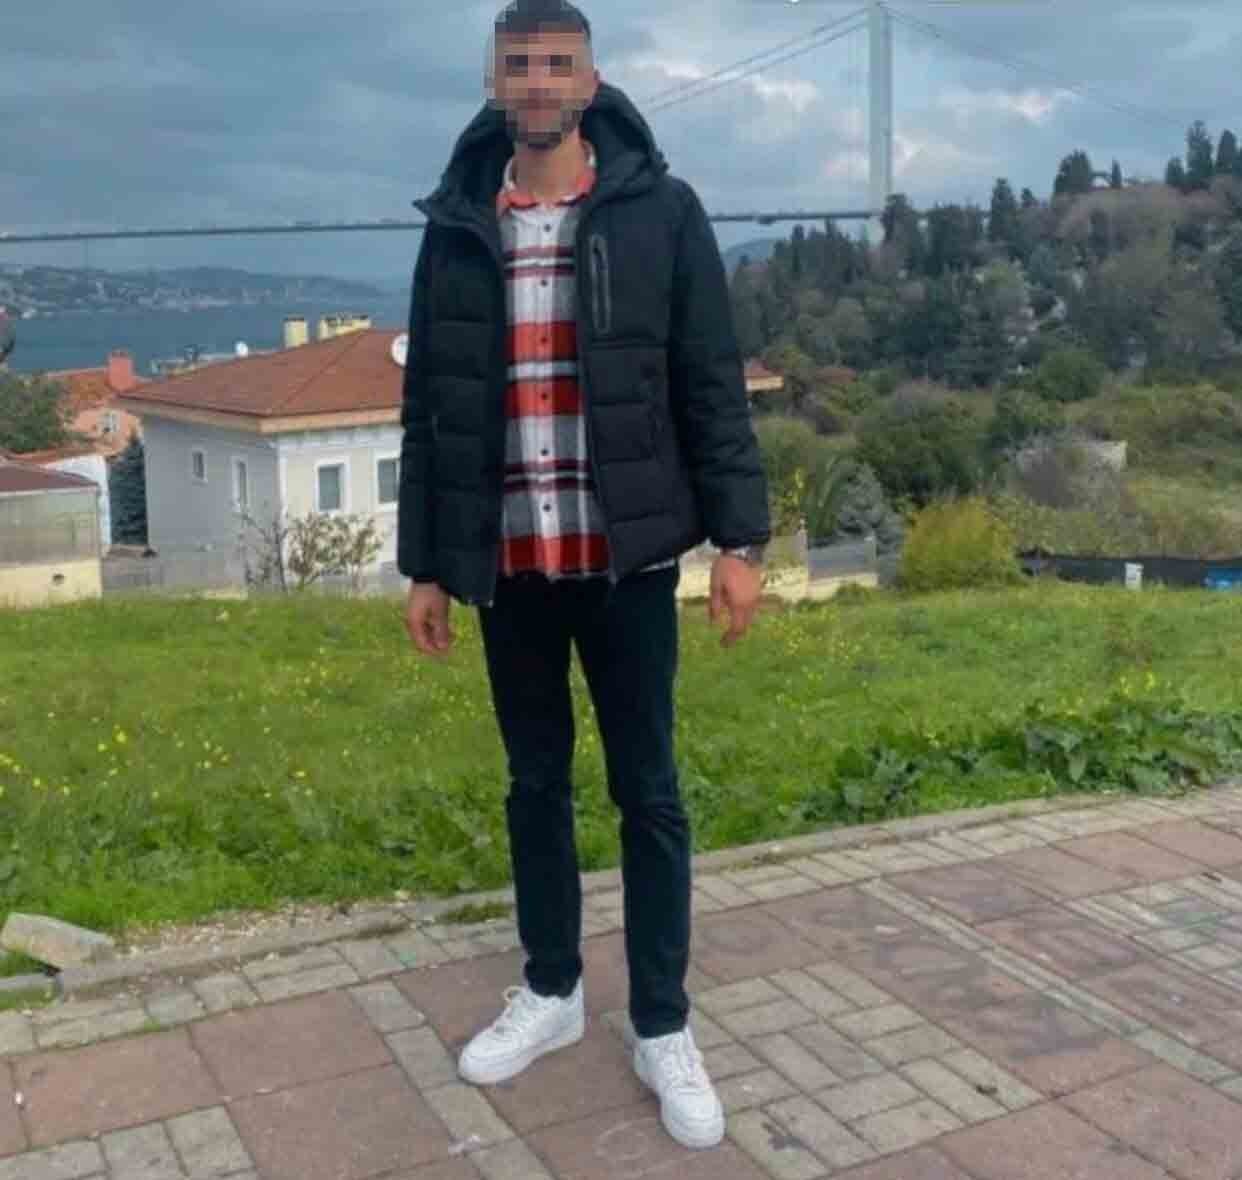 15 yaşındaki Yağmur’un cenazesi adli Tıptan alındı #istanbul